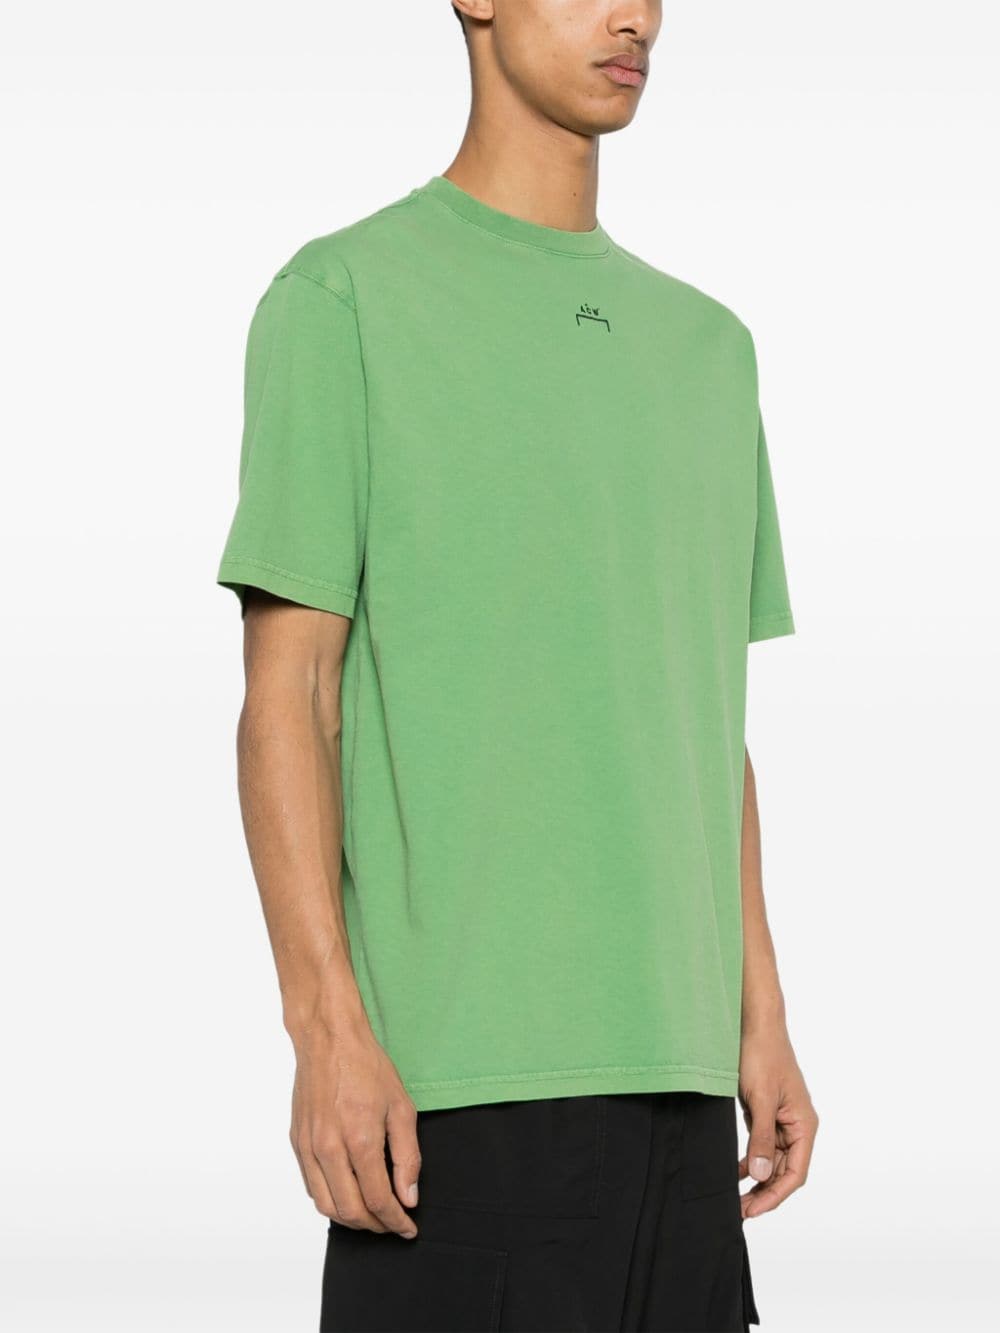 A-COLD-WALL* Katoenen T-shirt Groen